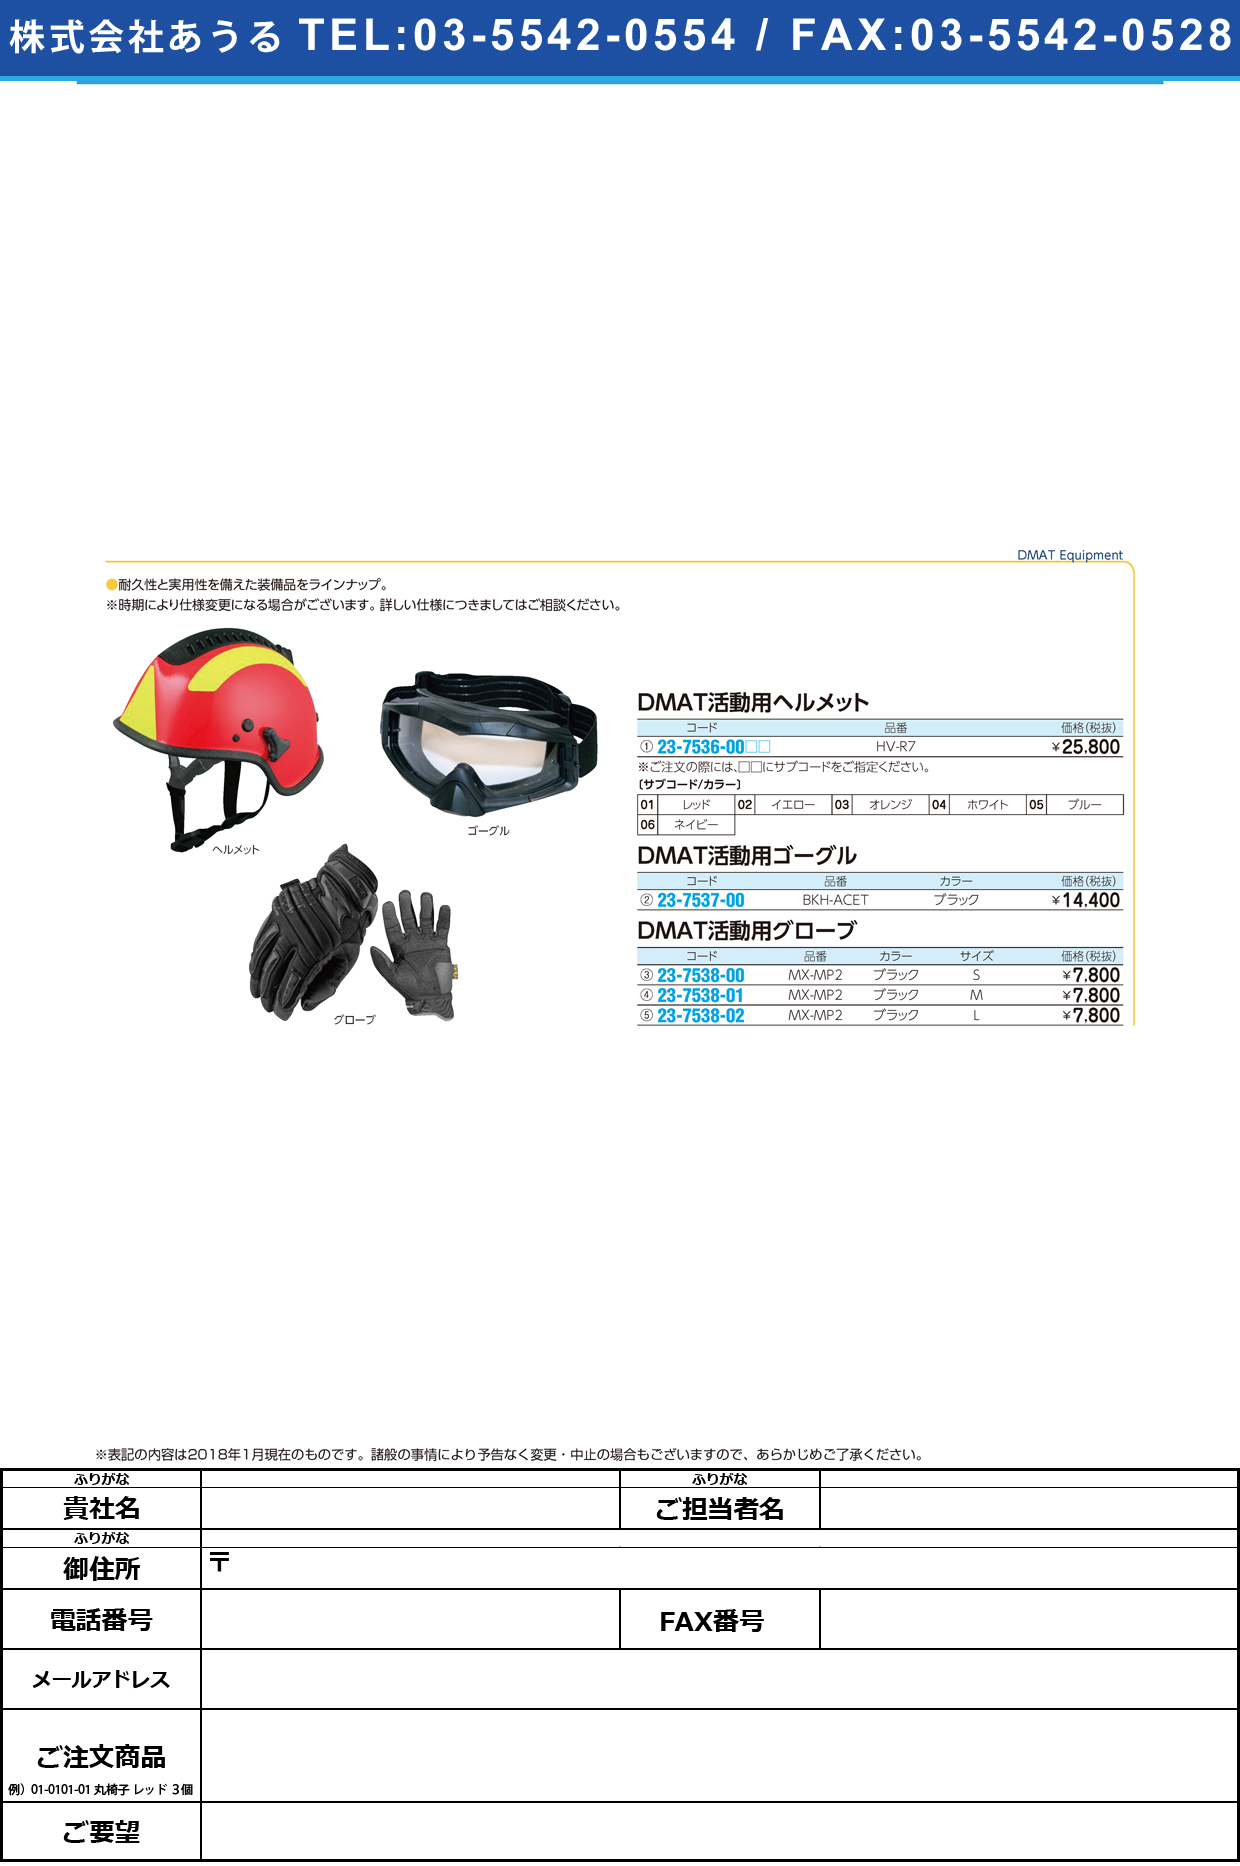 (23-7536-00)ＤＭＡＴ活動用ヘルメット HV-R7 DMATｶﾂﾄﾞｳﾖｳﾍﾙﾒｯﾄ ブルー【1個単位】【2018年カタログ商品】